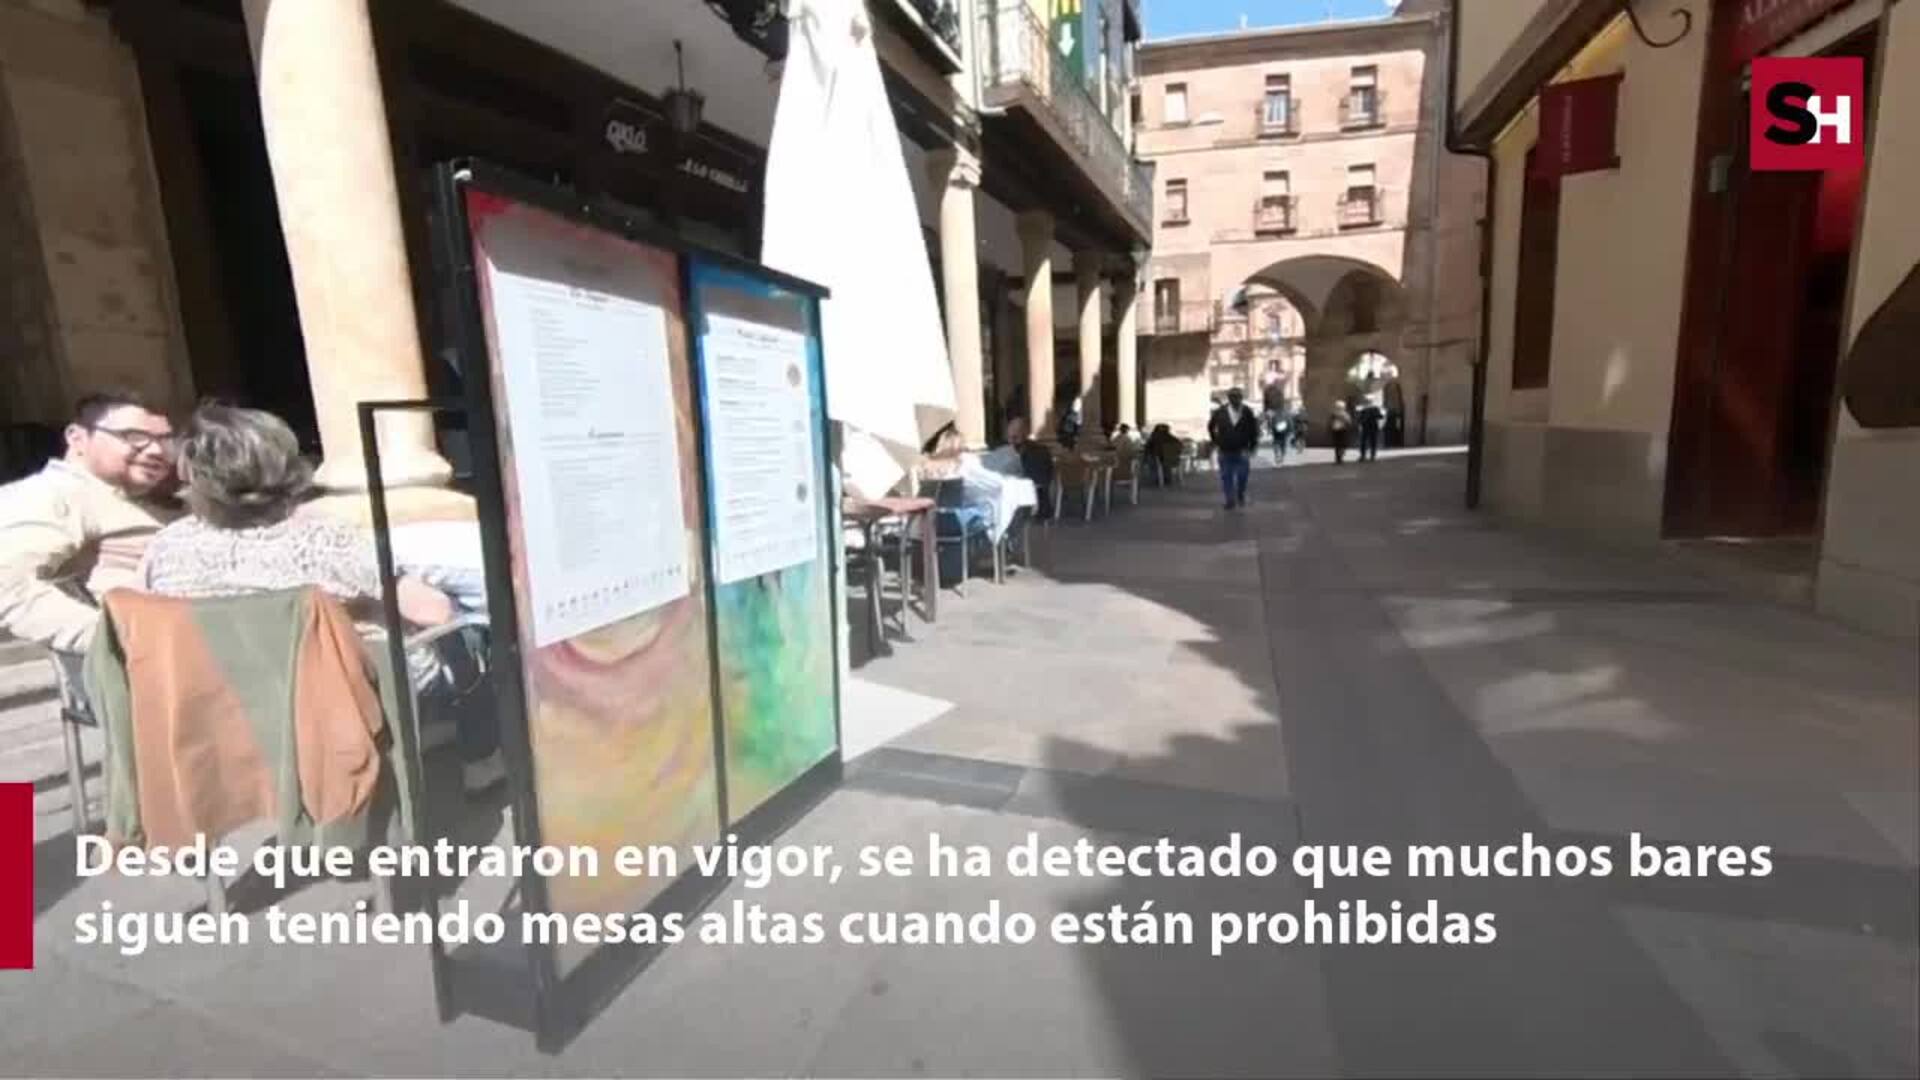 Incumplimientos en las normas de las terrazas de Salamanca